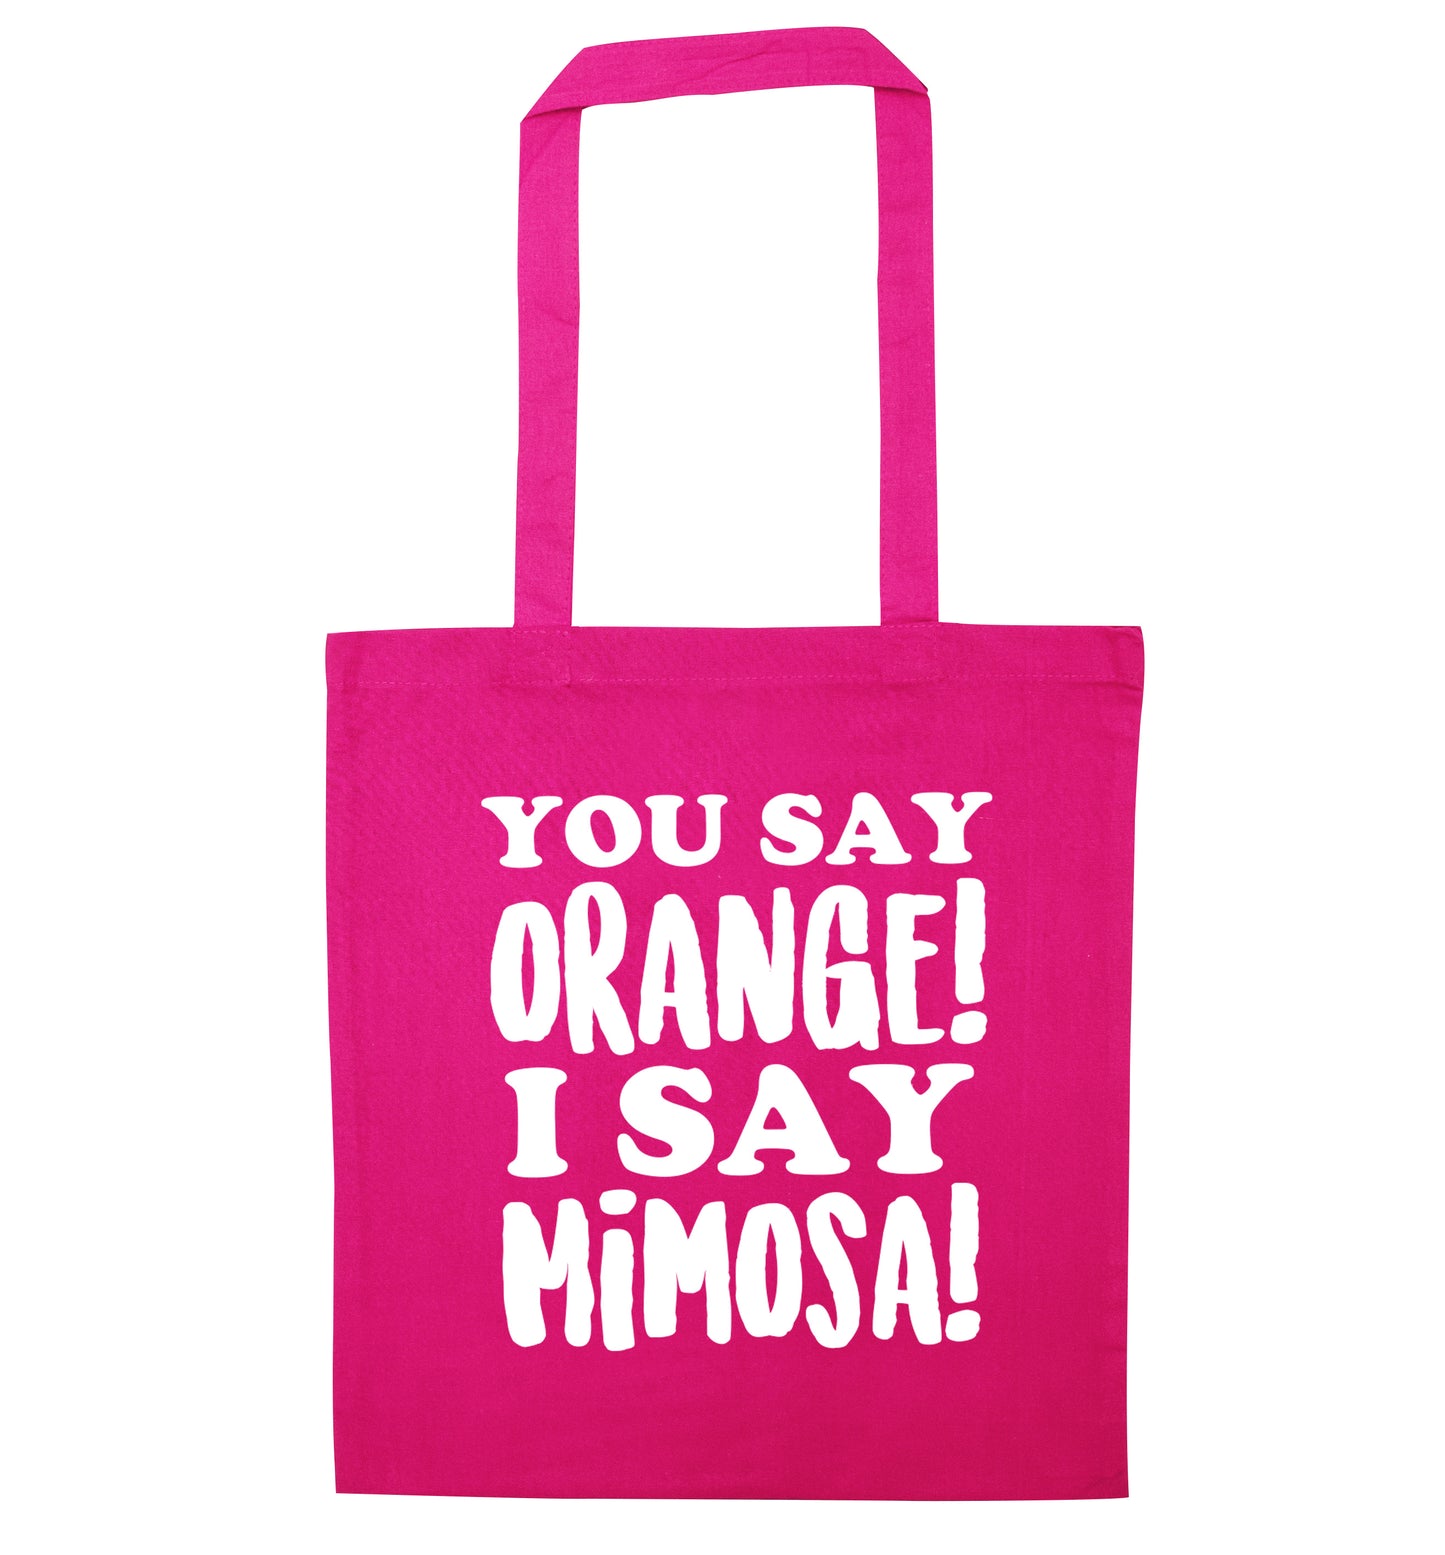 You say orange I say mimosa! pink tote bag